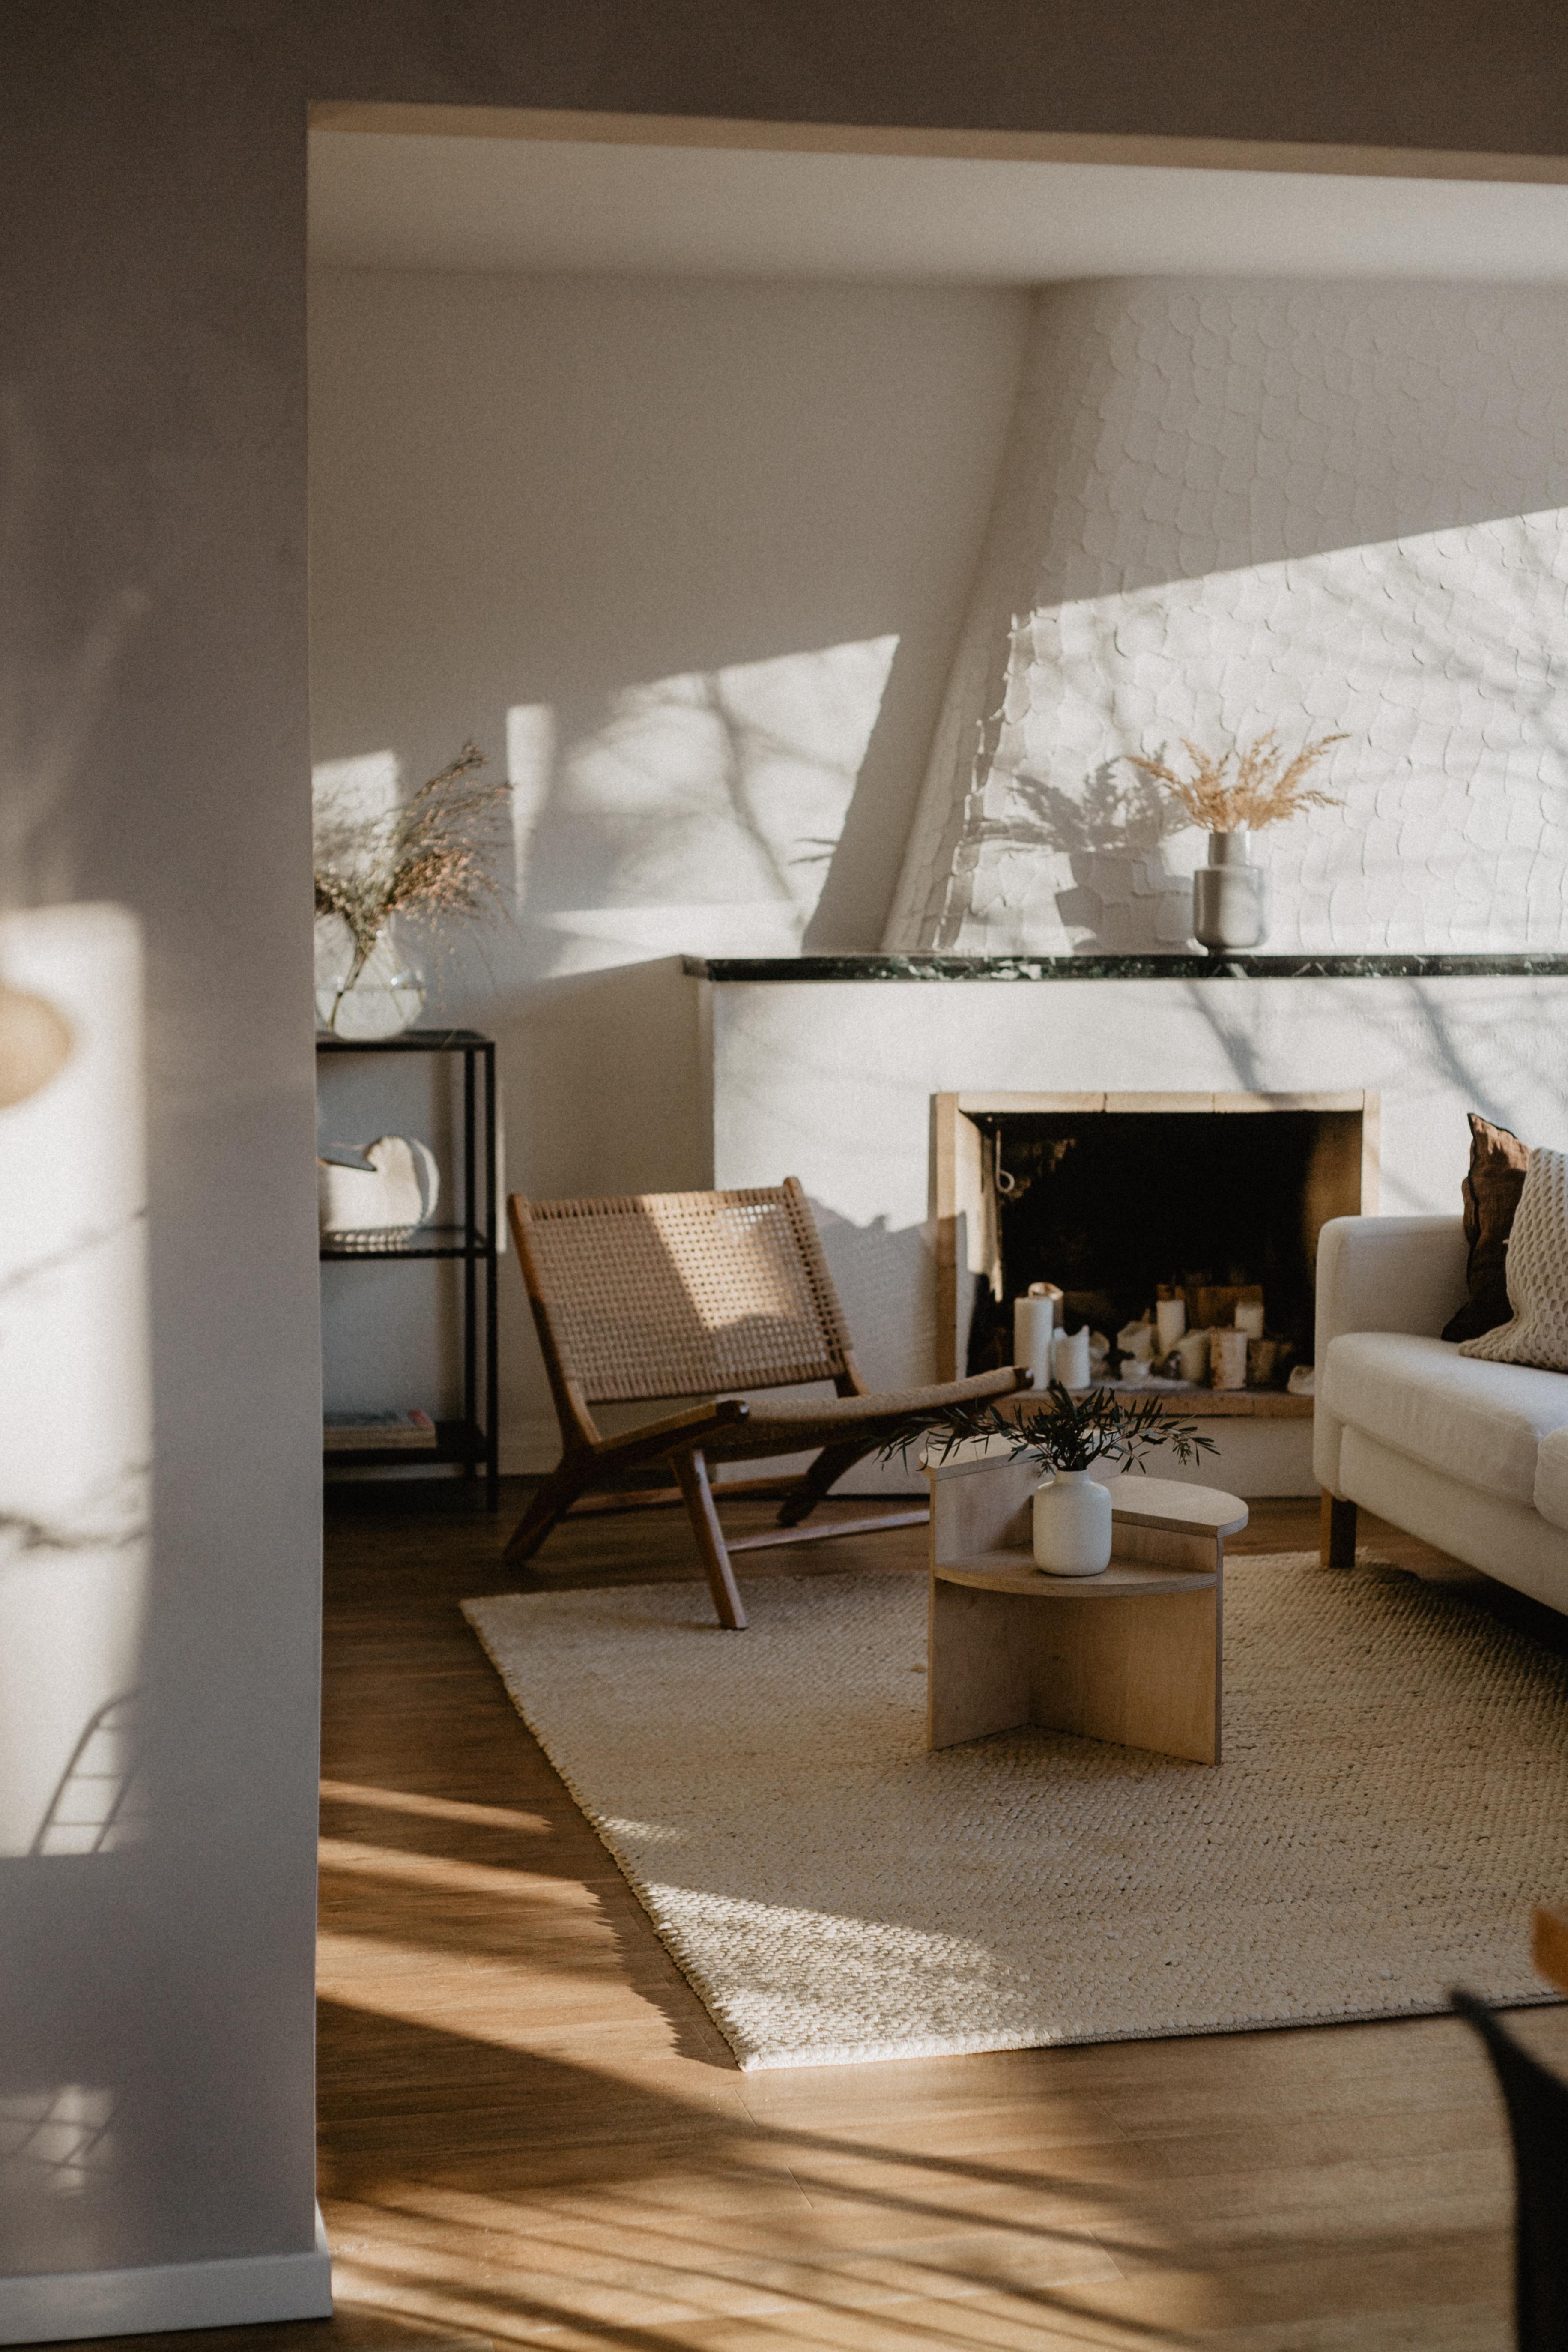 #sonne #wohnzimmer #licht und #schattenspiele #interior #spring #kaminzimmer #interiordesign #holzliebe